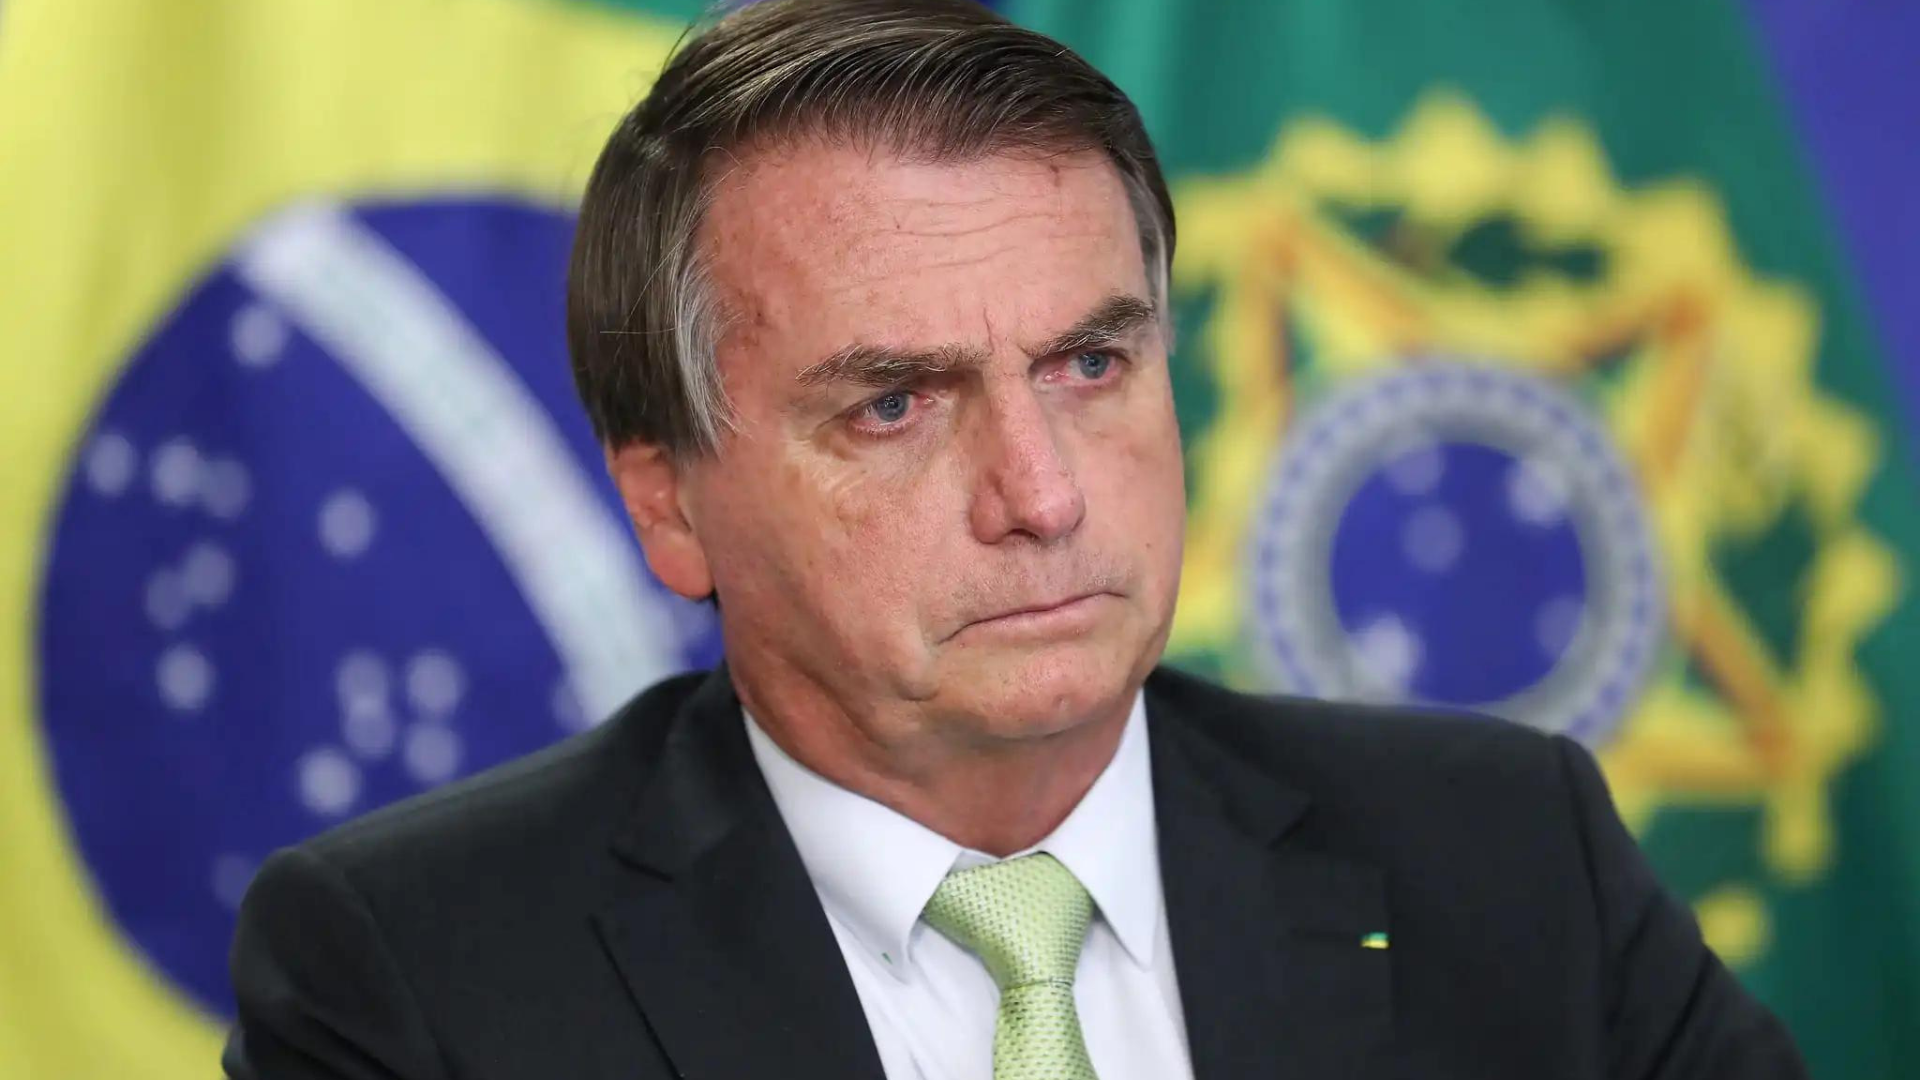 Foto de Bolsonaro com expressão séria e deprimido.